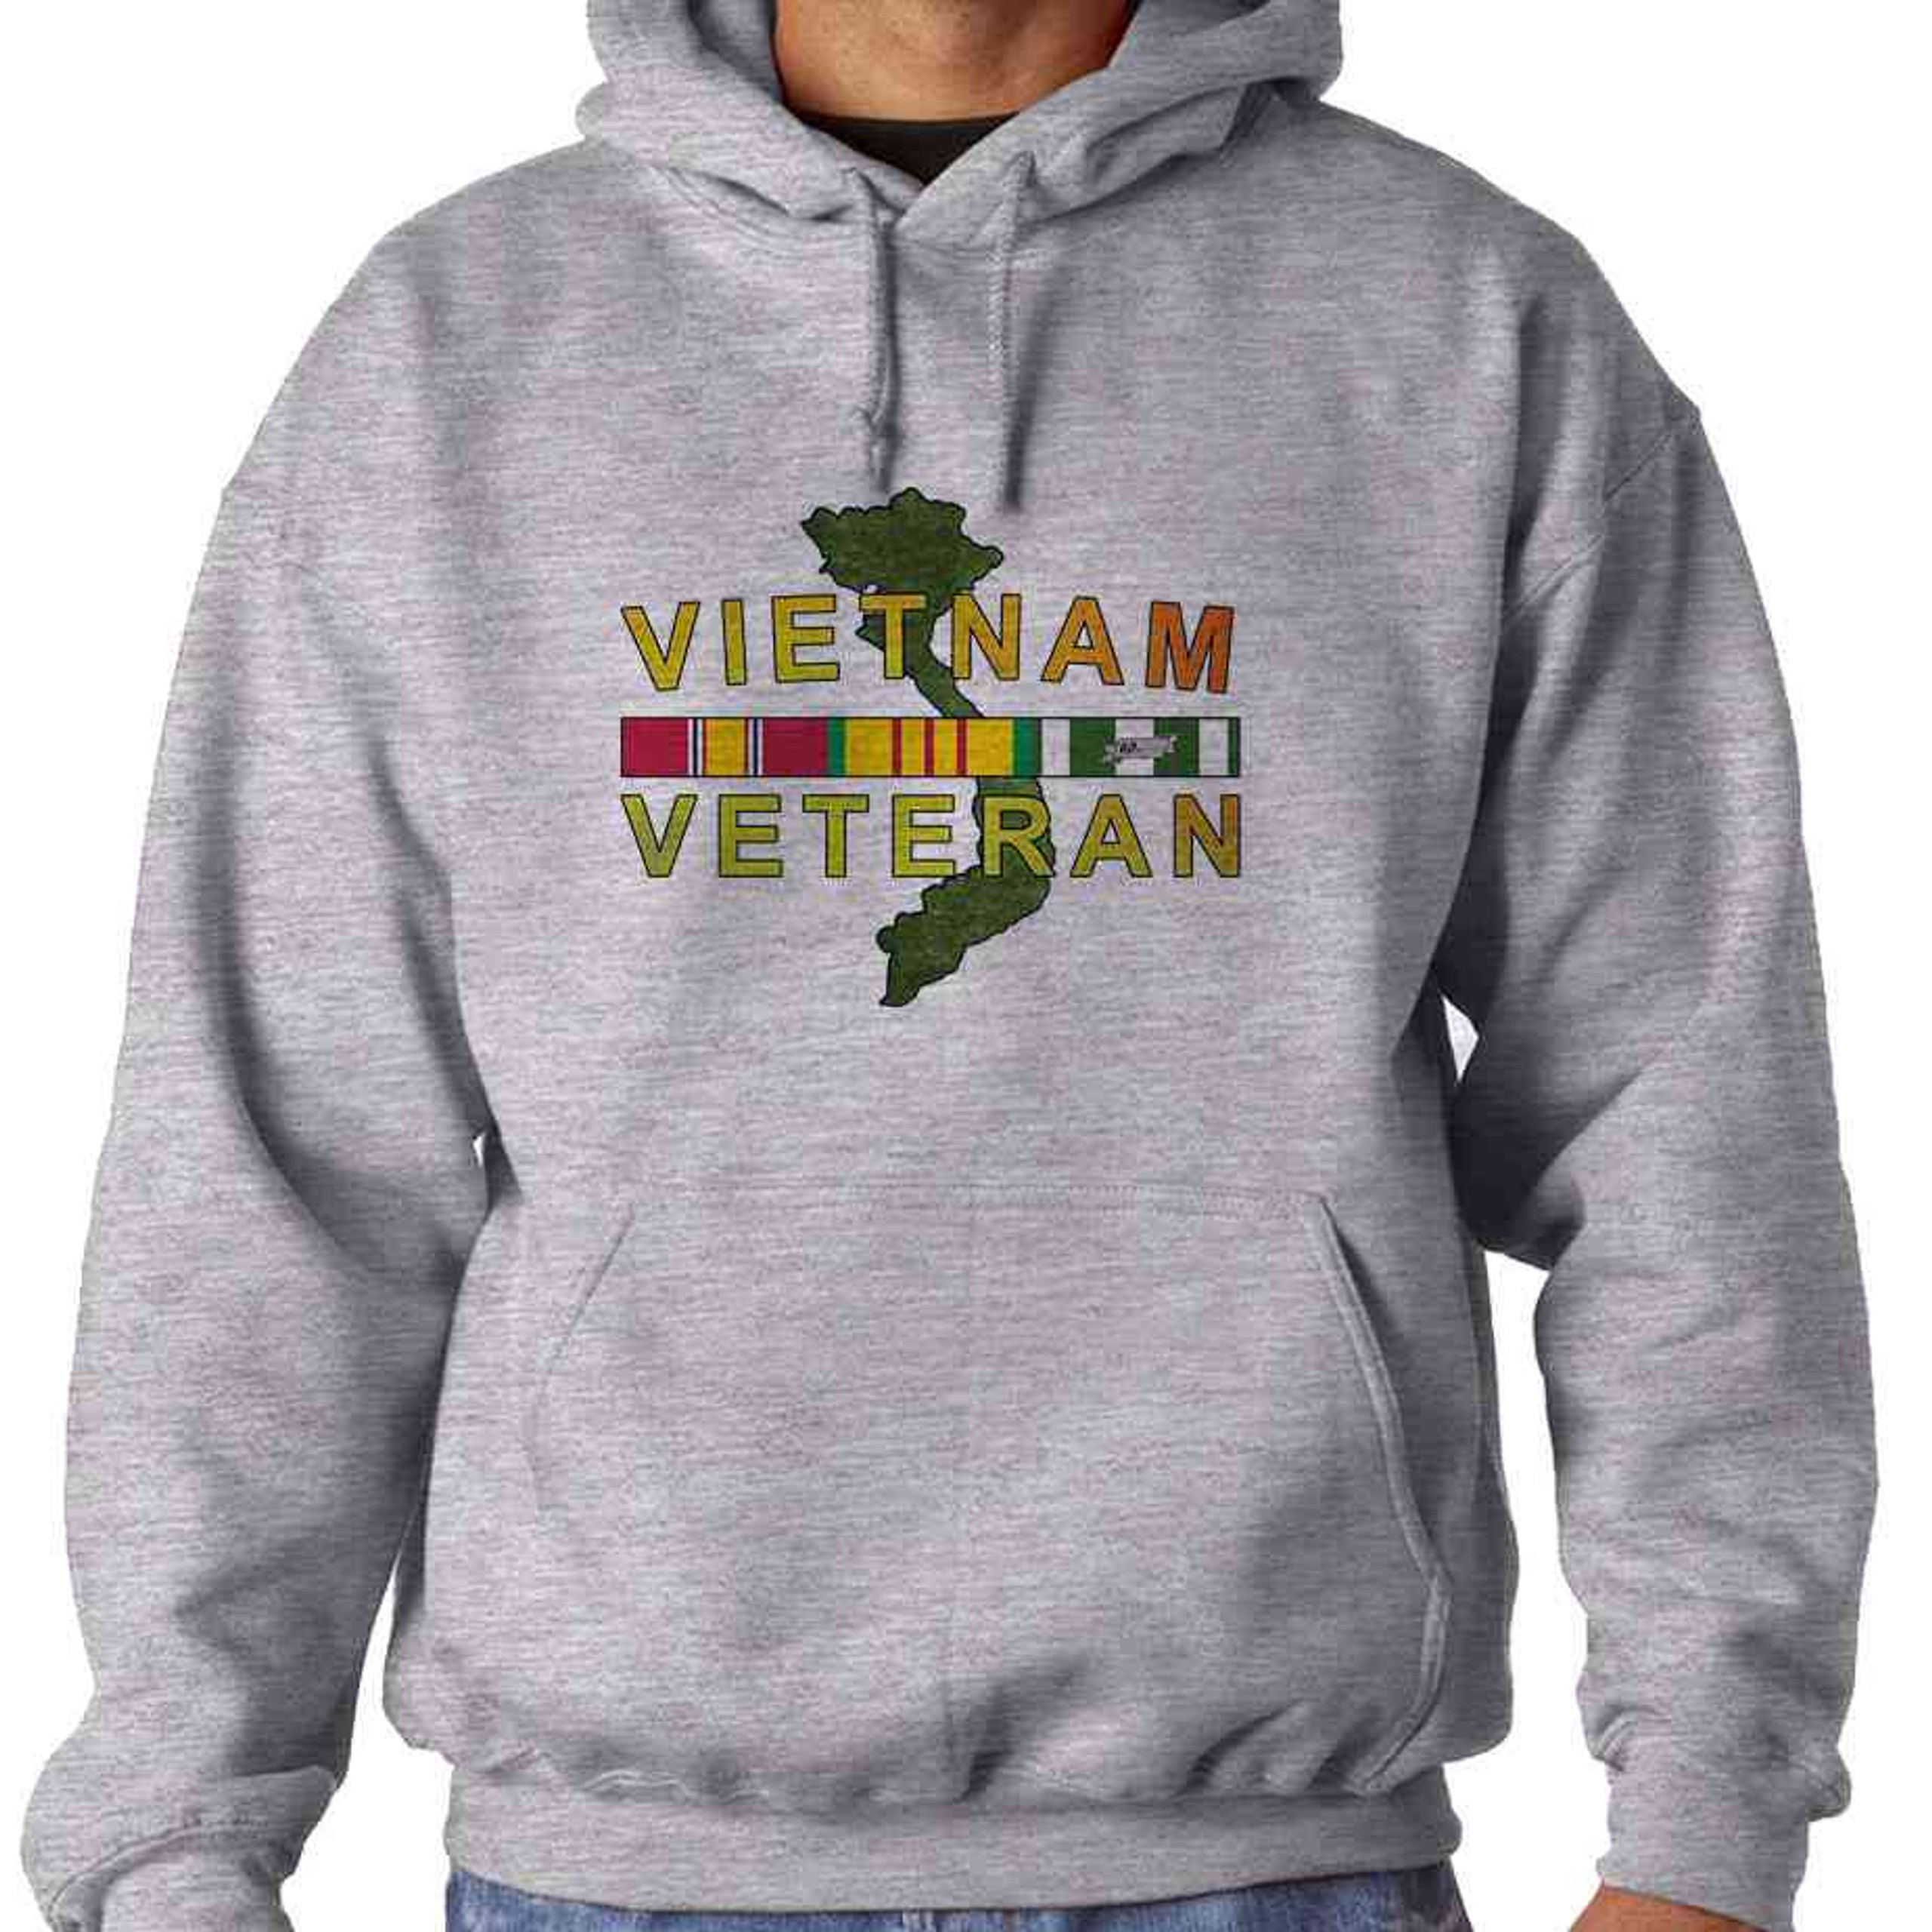 Vietnam Veteran Map Hooded Sweatshirt / Vetfriends.com